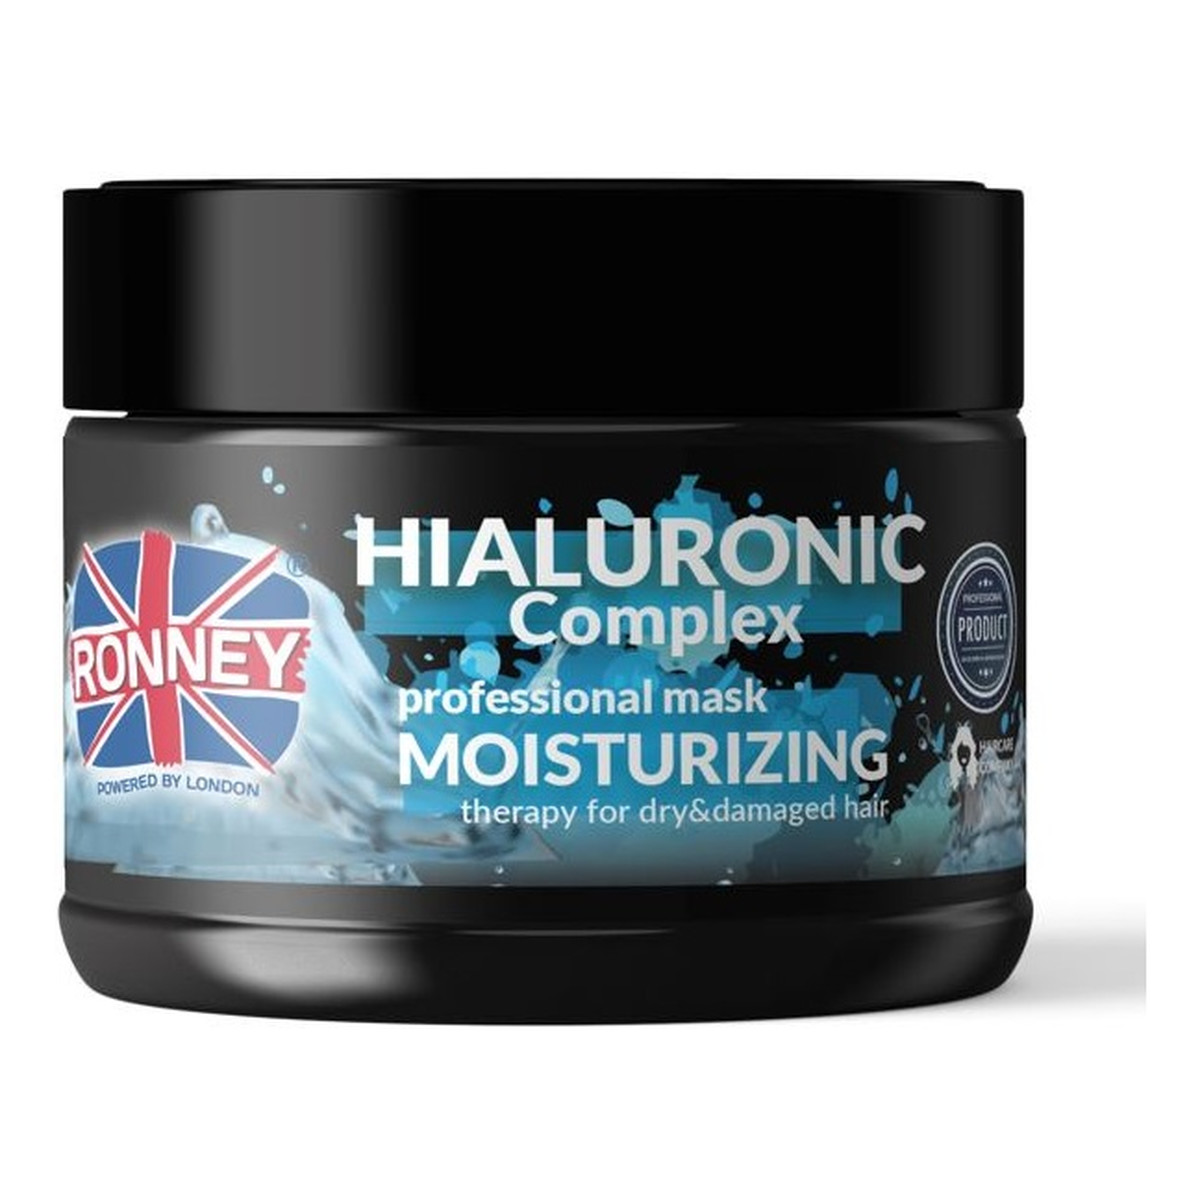 Ronney Hialuronic complex professional mask moisturizing nawilżająca maska do włosów suchych i zniszczonych 300ml